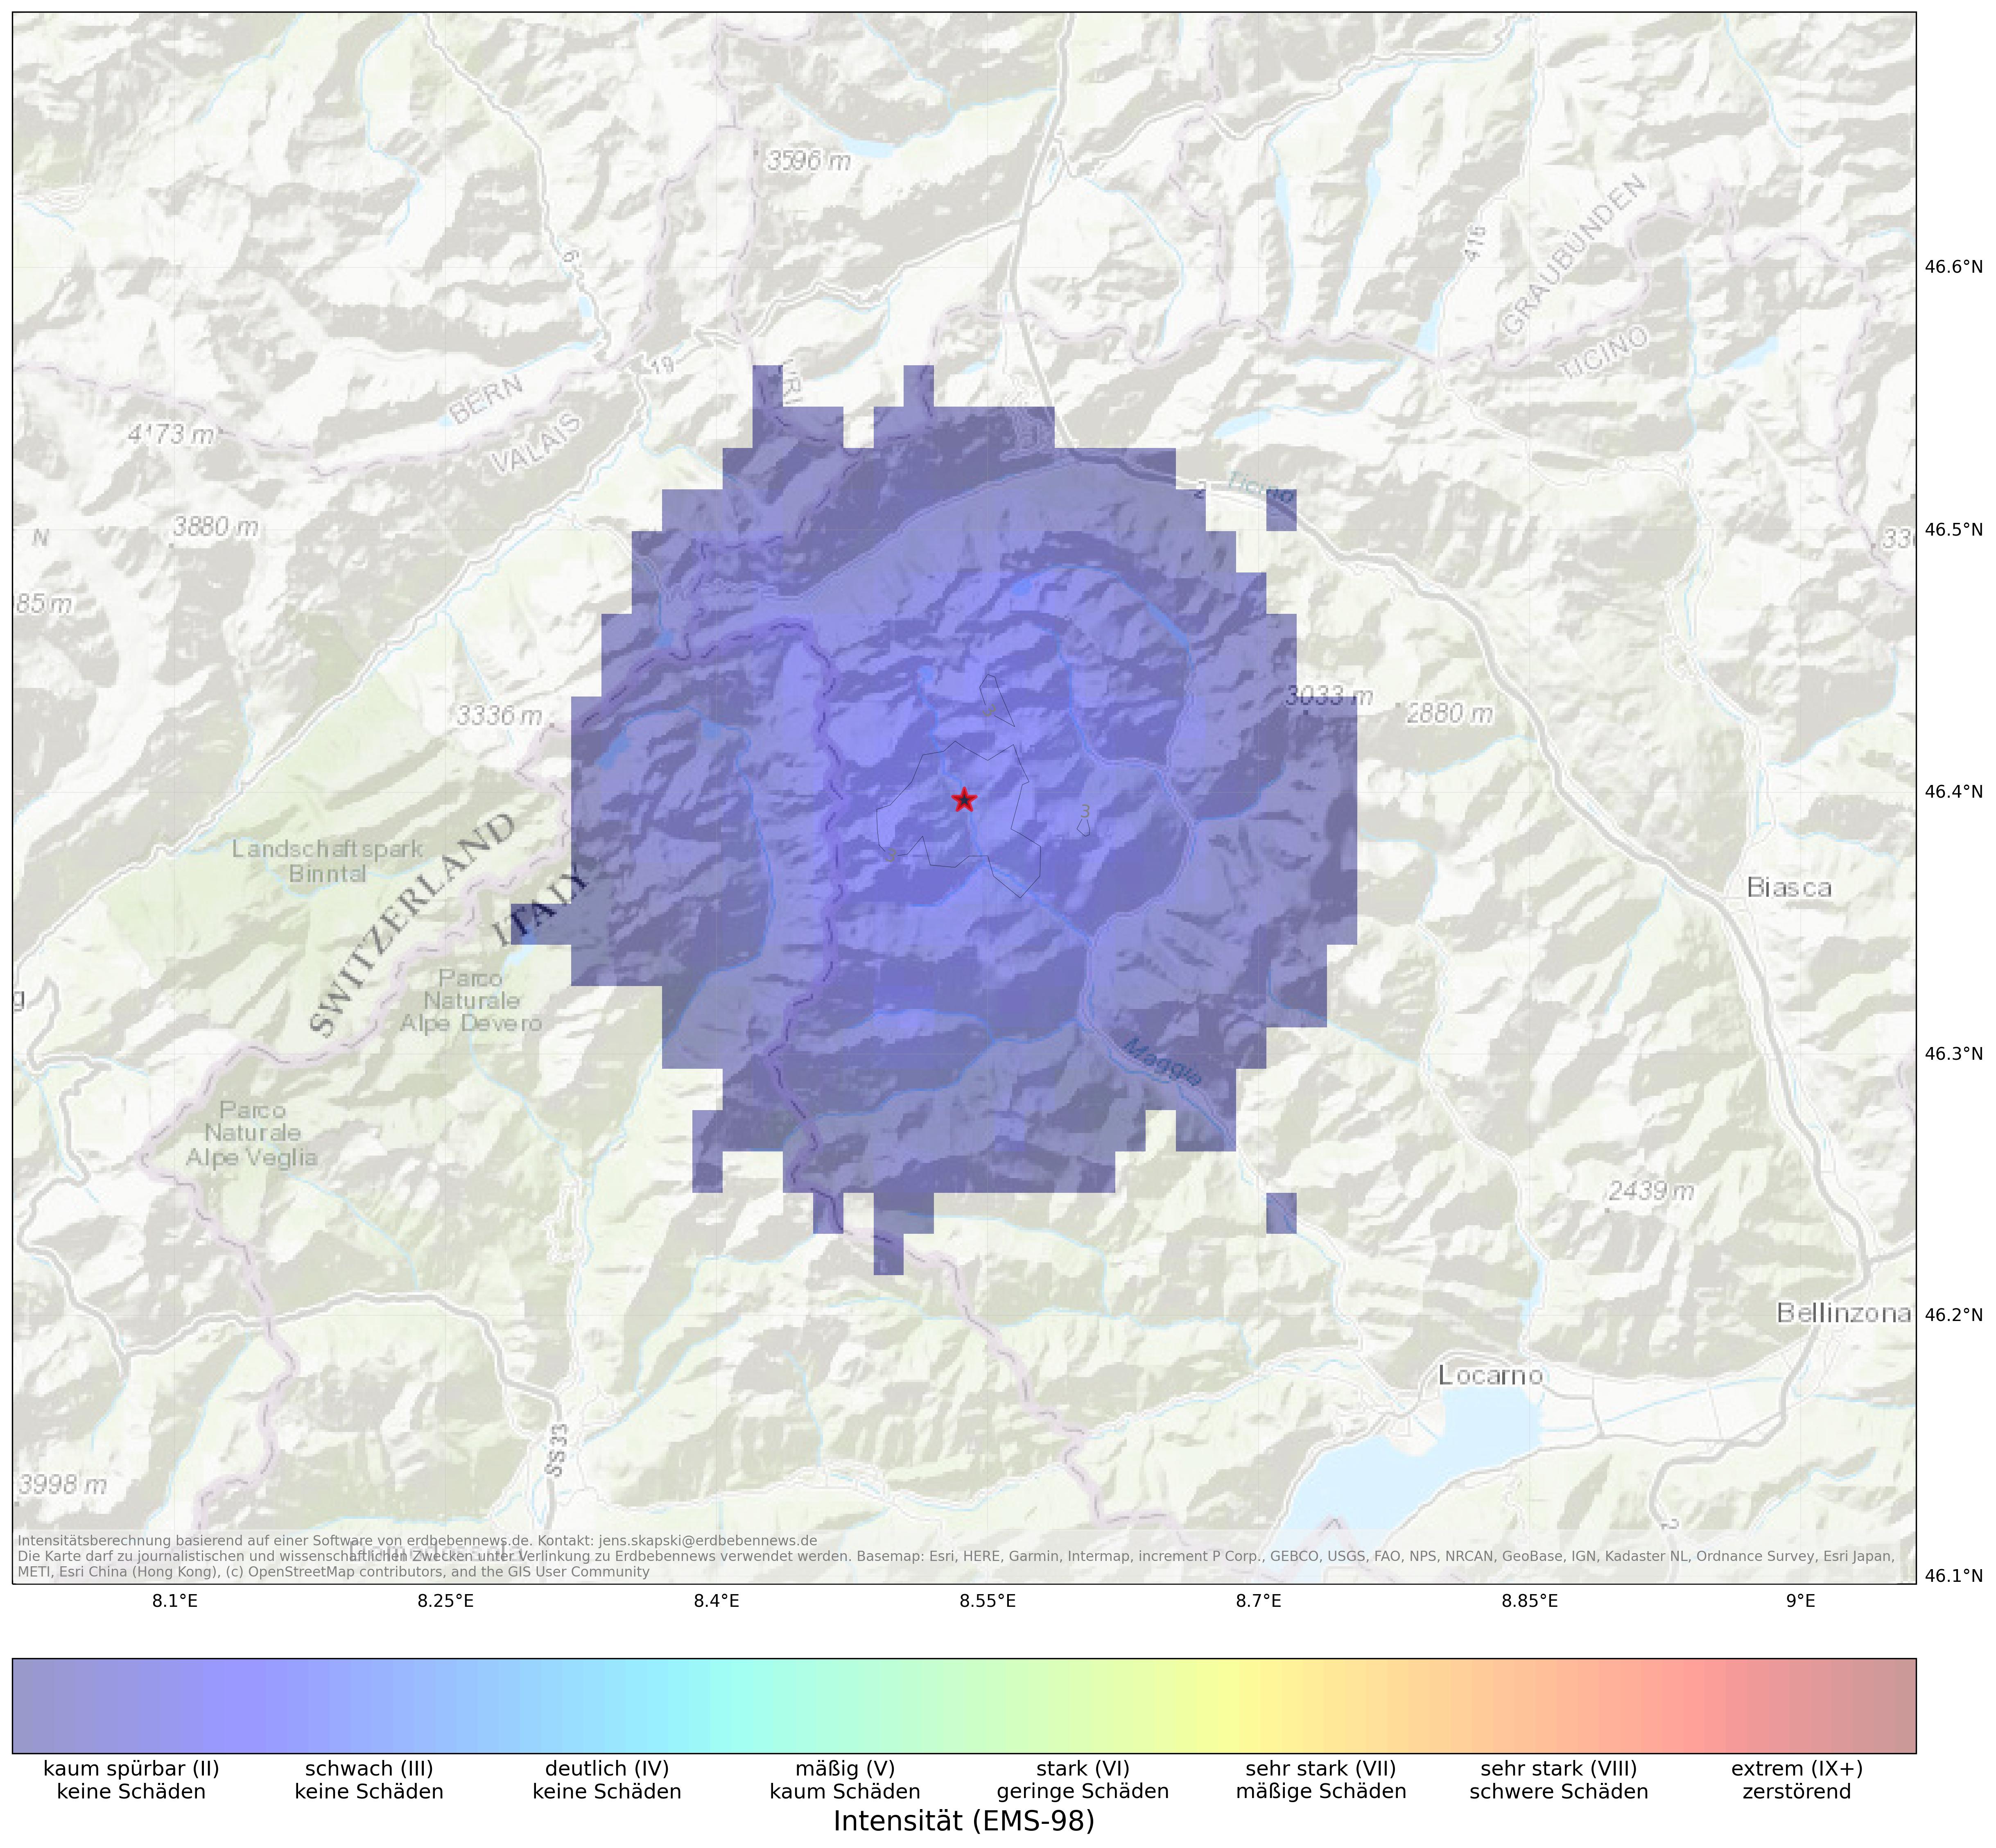 Berechnete Intensität (ShakeMap) des Erdbebens der Stärke 3.1 am 18. März, 16:52 Uhr in Italien